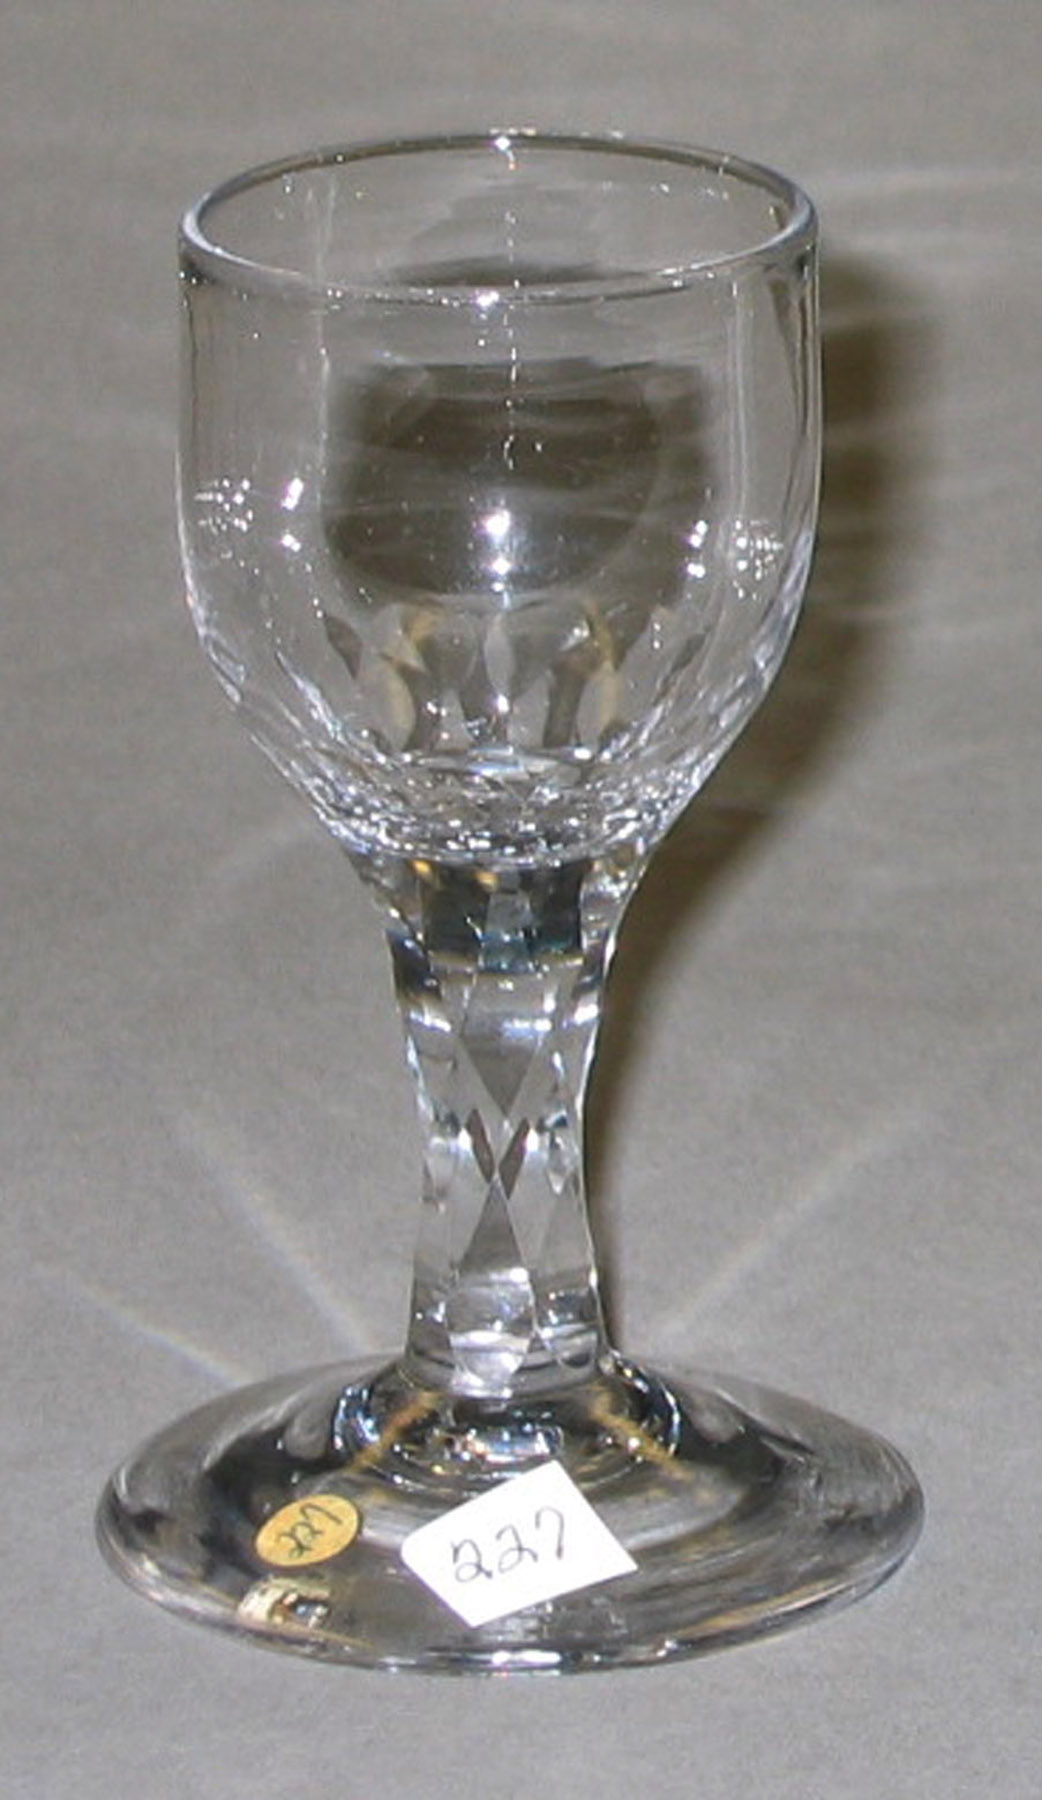 2006.0003.019 Wine glass